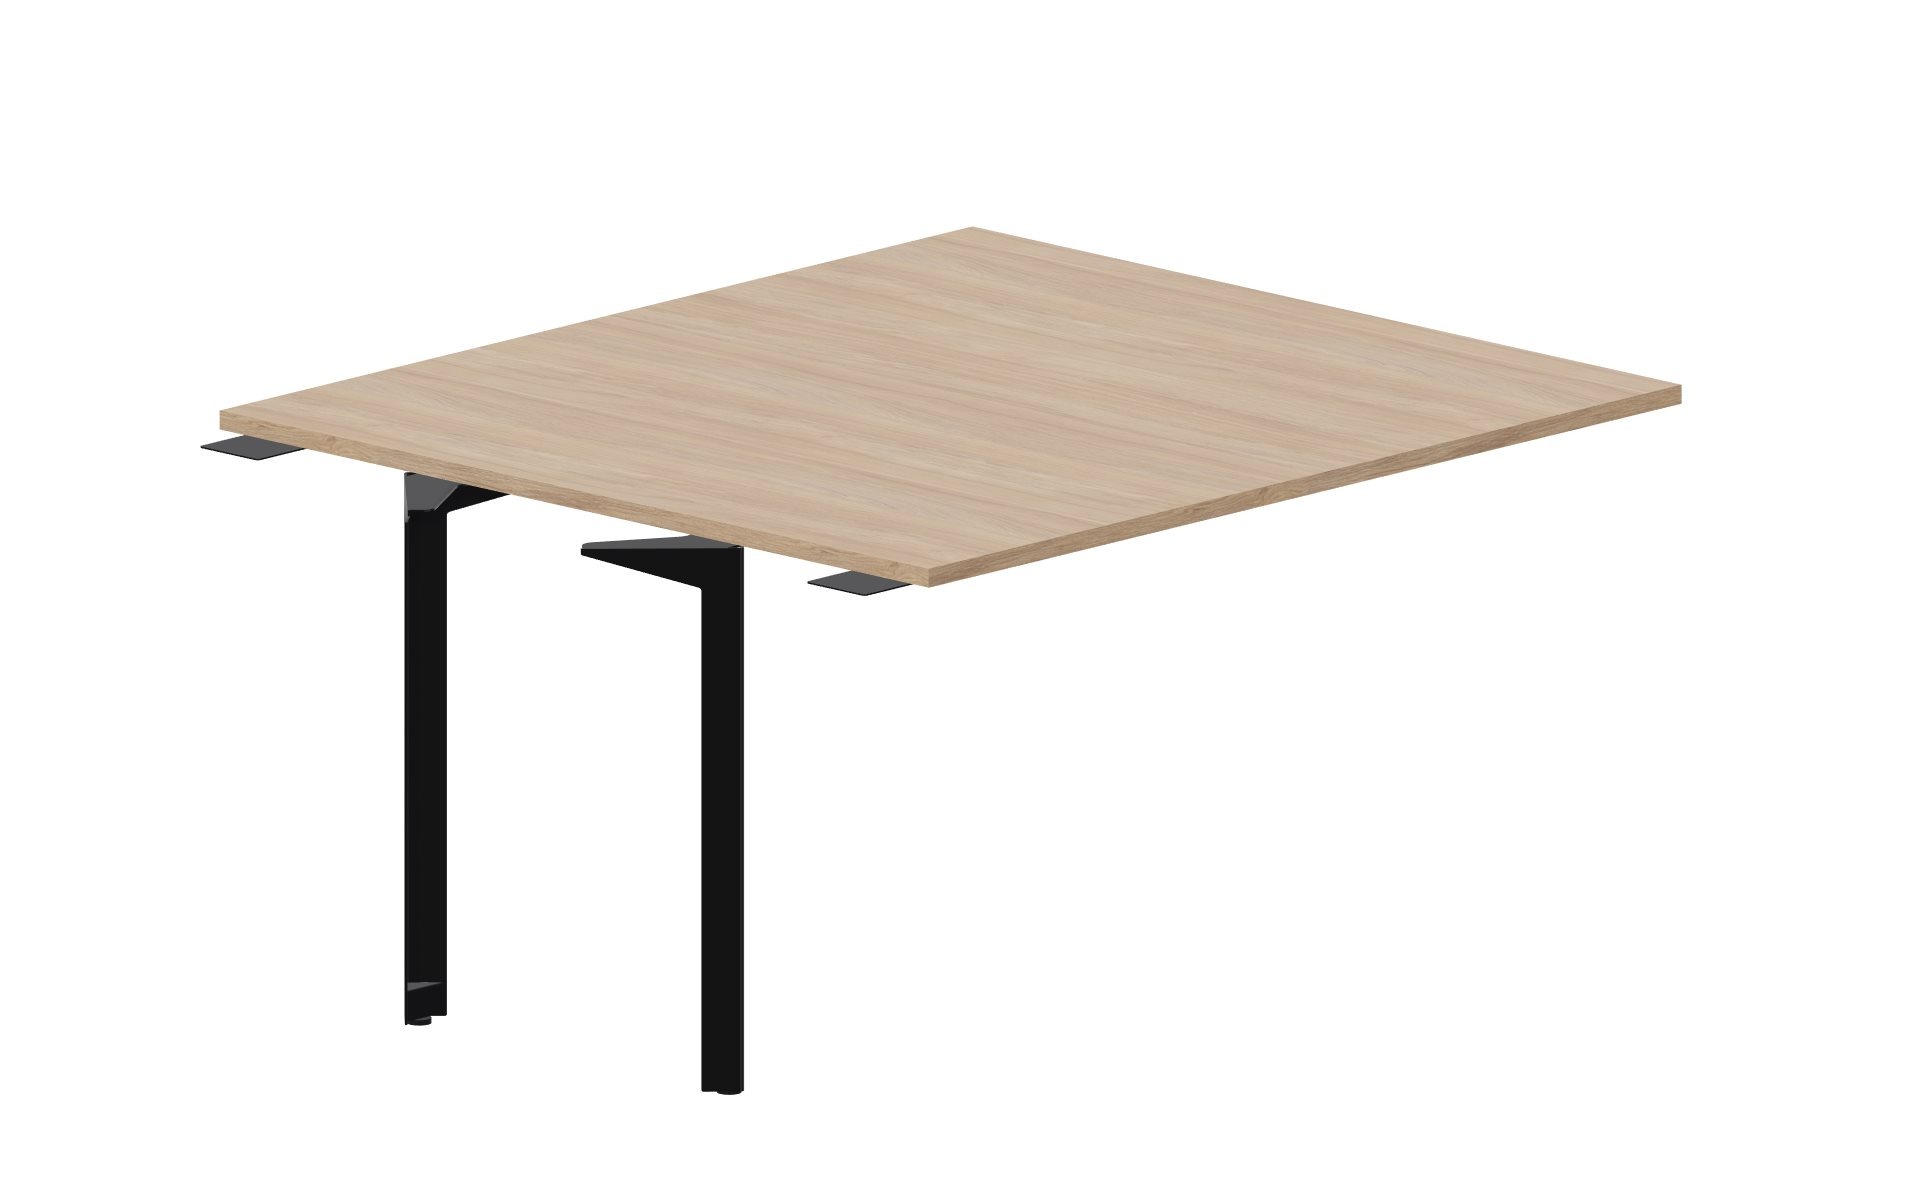 Приставной элемент стола для совещаний 140х126х75 (толщина столешницы 2,5 см) Ray Meeting RYMP1412